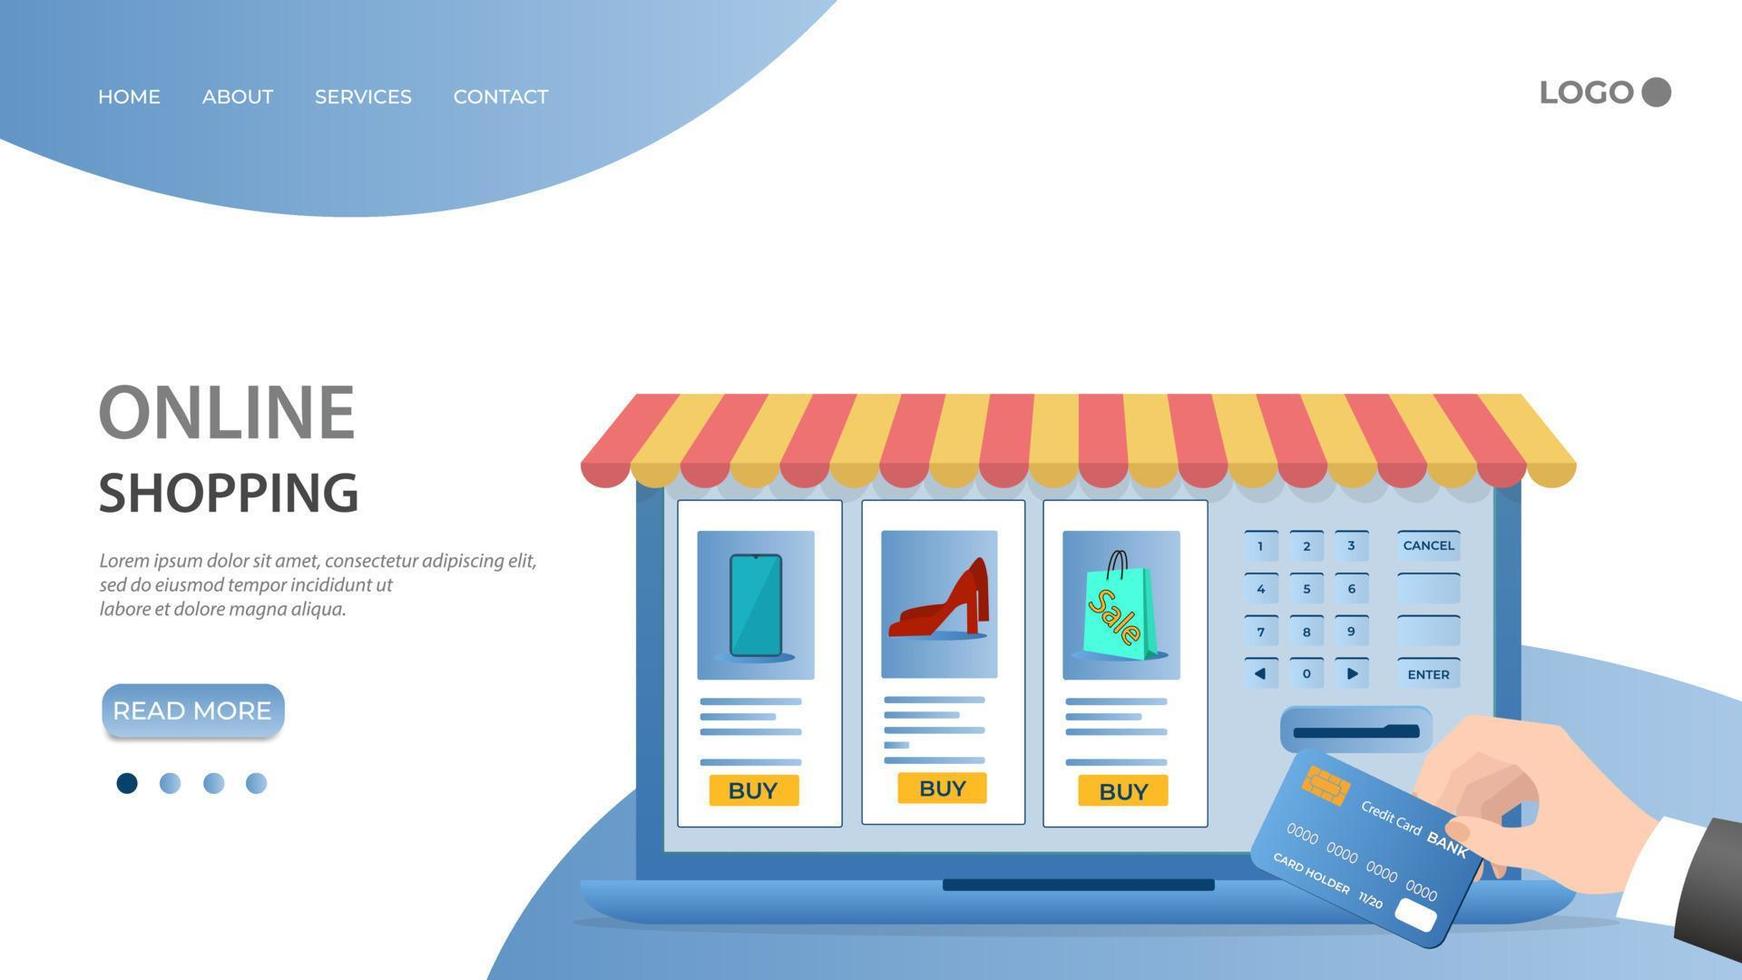 boutique en ligne.les gens utilisent une carte de crédit pour effectuer des achats dans une boutique en ligne.le concept de commerce en ligne.illustration vectorielle plate.le modèle de la page de destination. vecteur